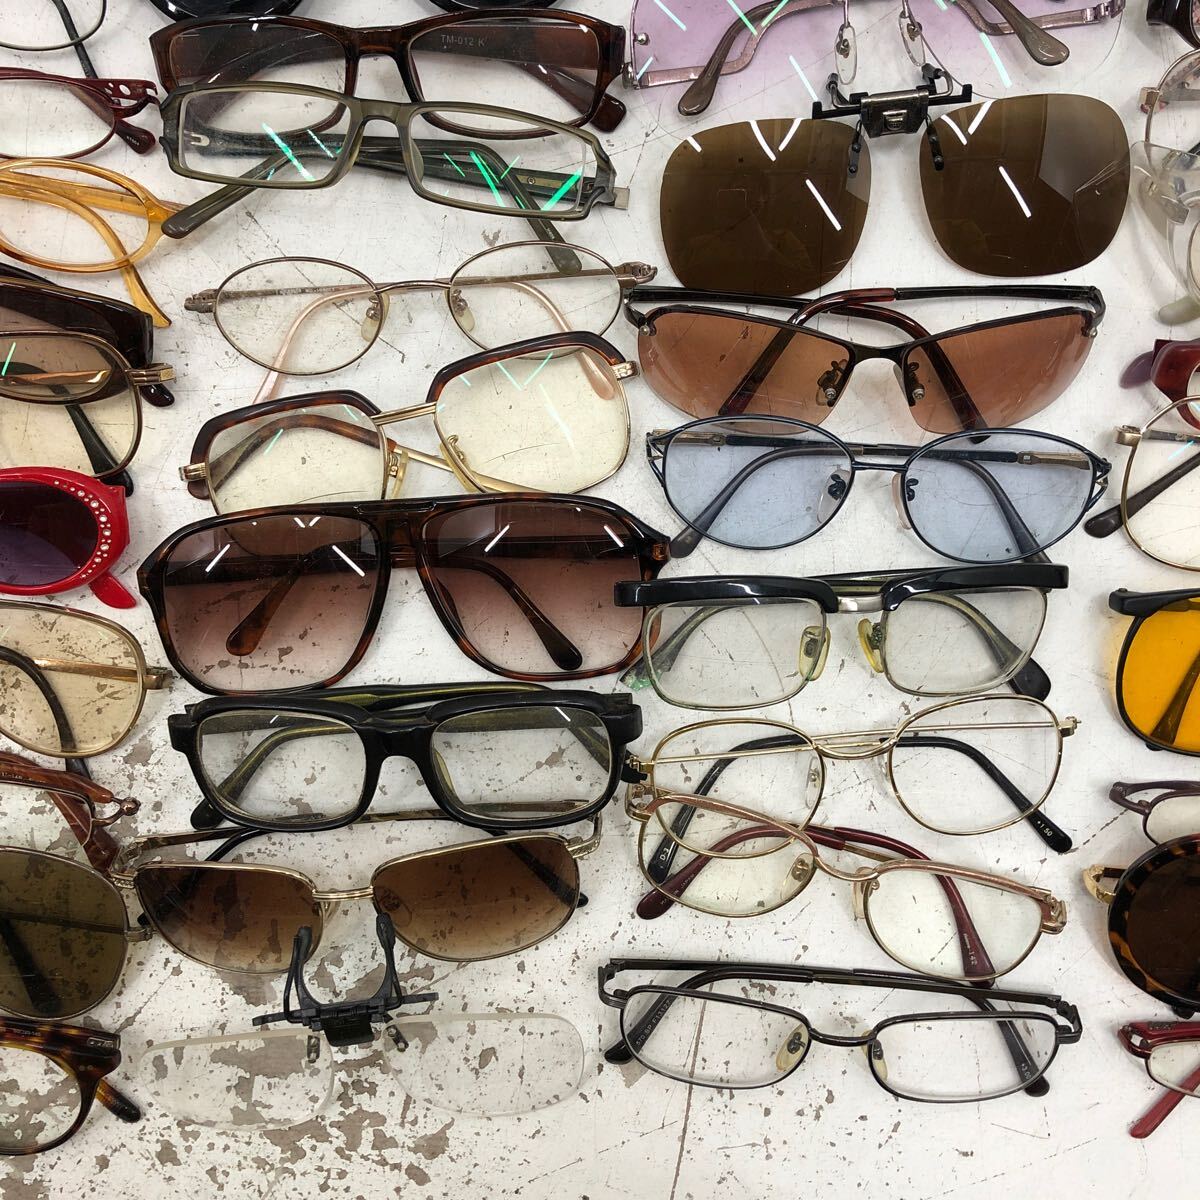 R ☆大量☆ 眼鏡 メガネ めがね サングラス 老眼鏡 フレーム まとめ 約6kg セット ブランド ノーブランド 度あり 度なし 混在の画像9